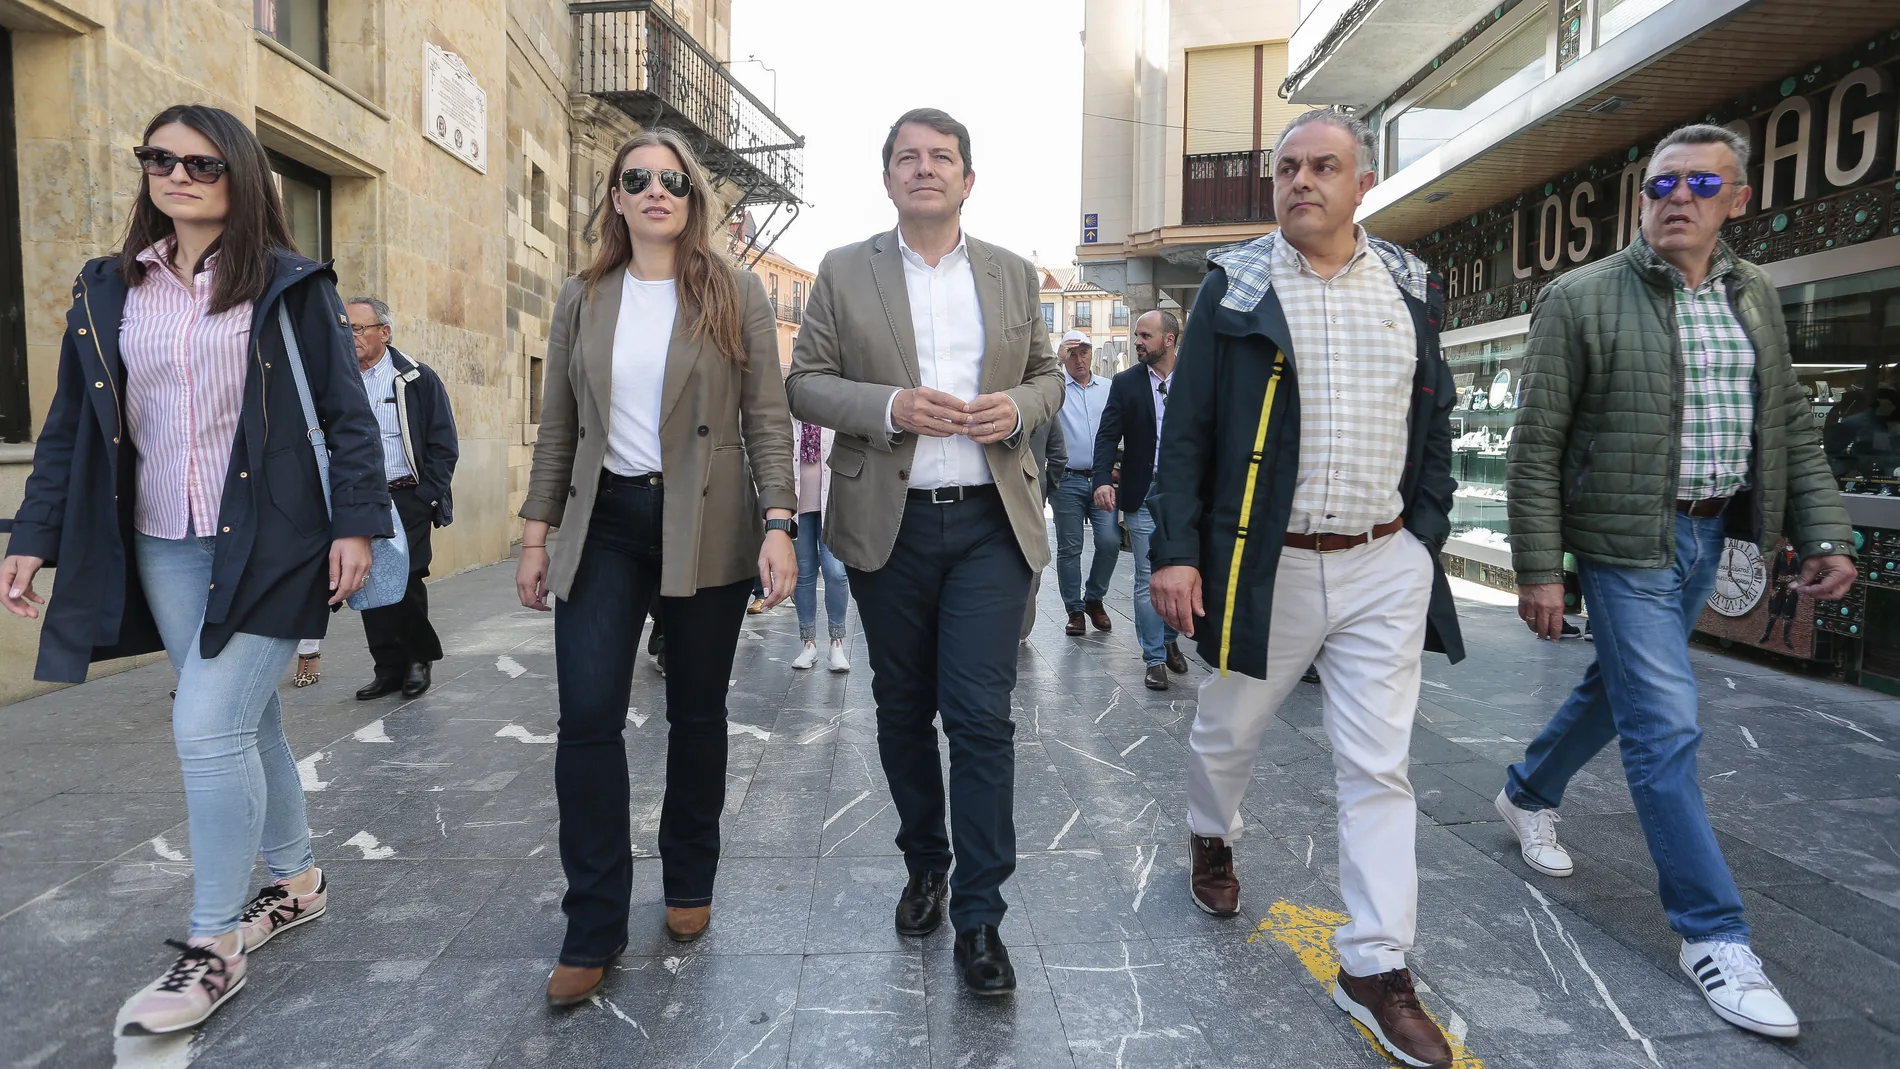 Mañueco pase por Astorga junto al candidato José Luis Nieto y Ester Muñoz, entre otros